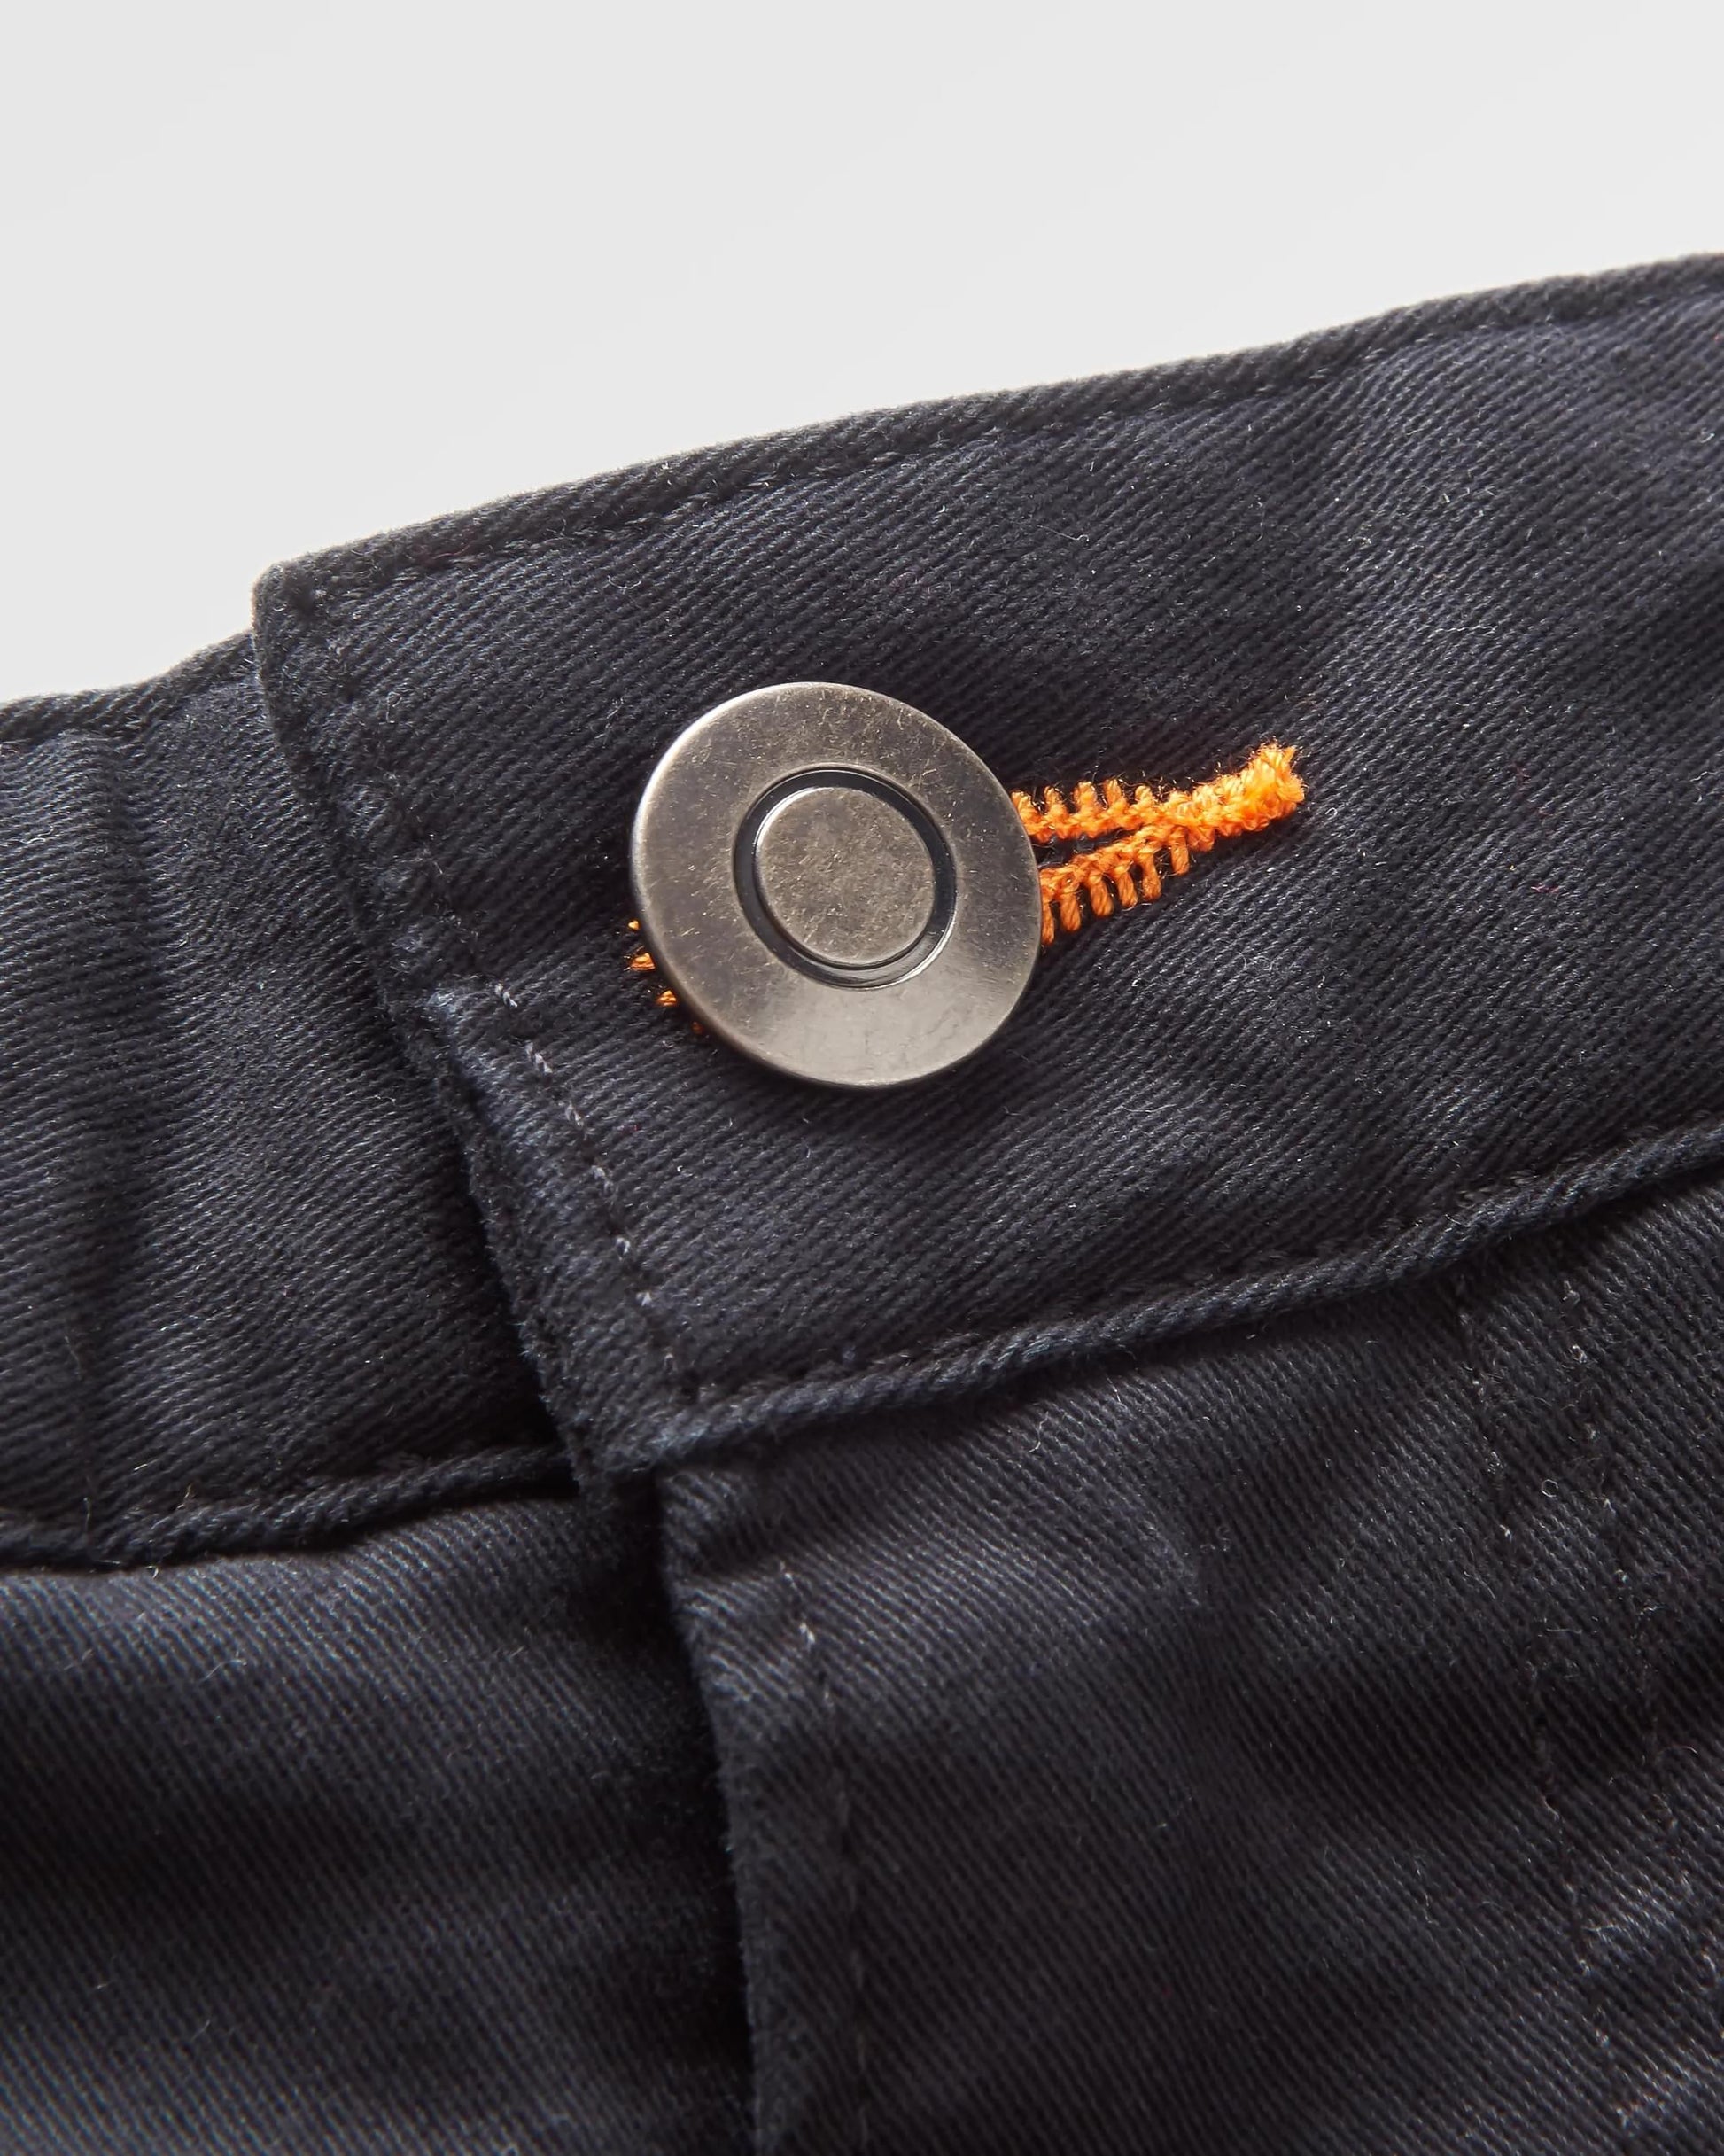 365 5 Pocket Trouser - Black